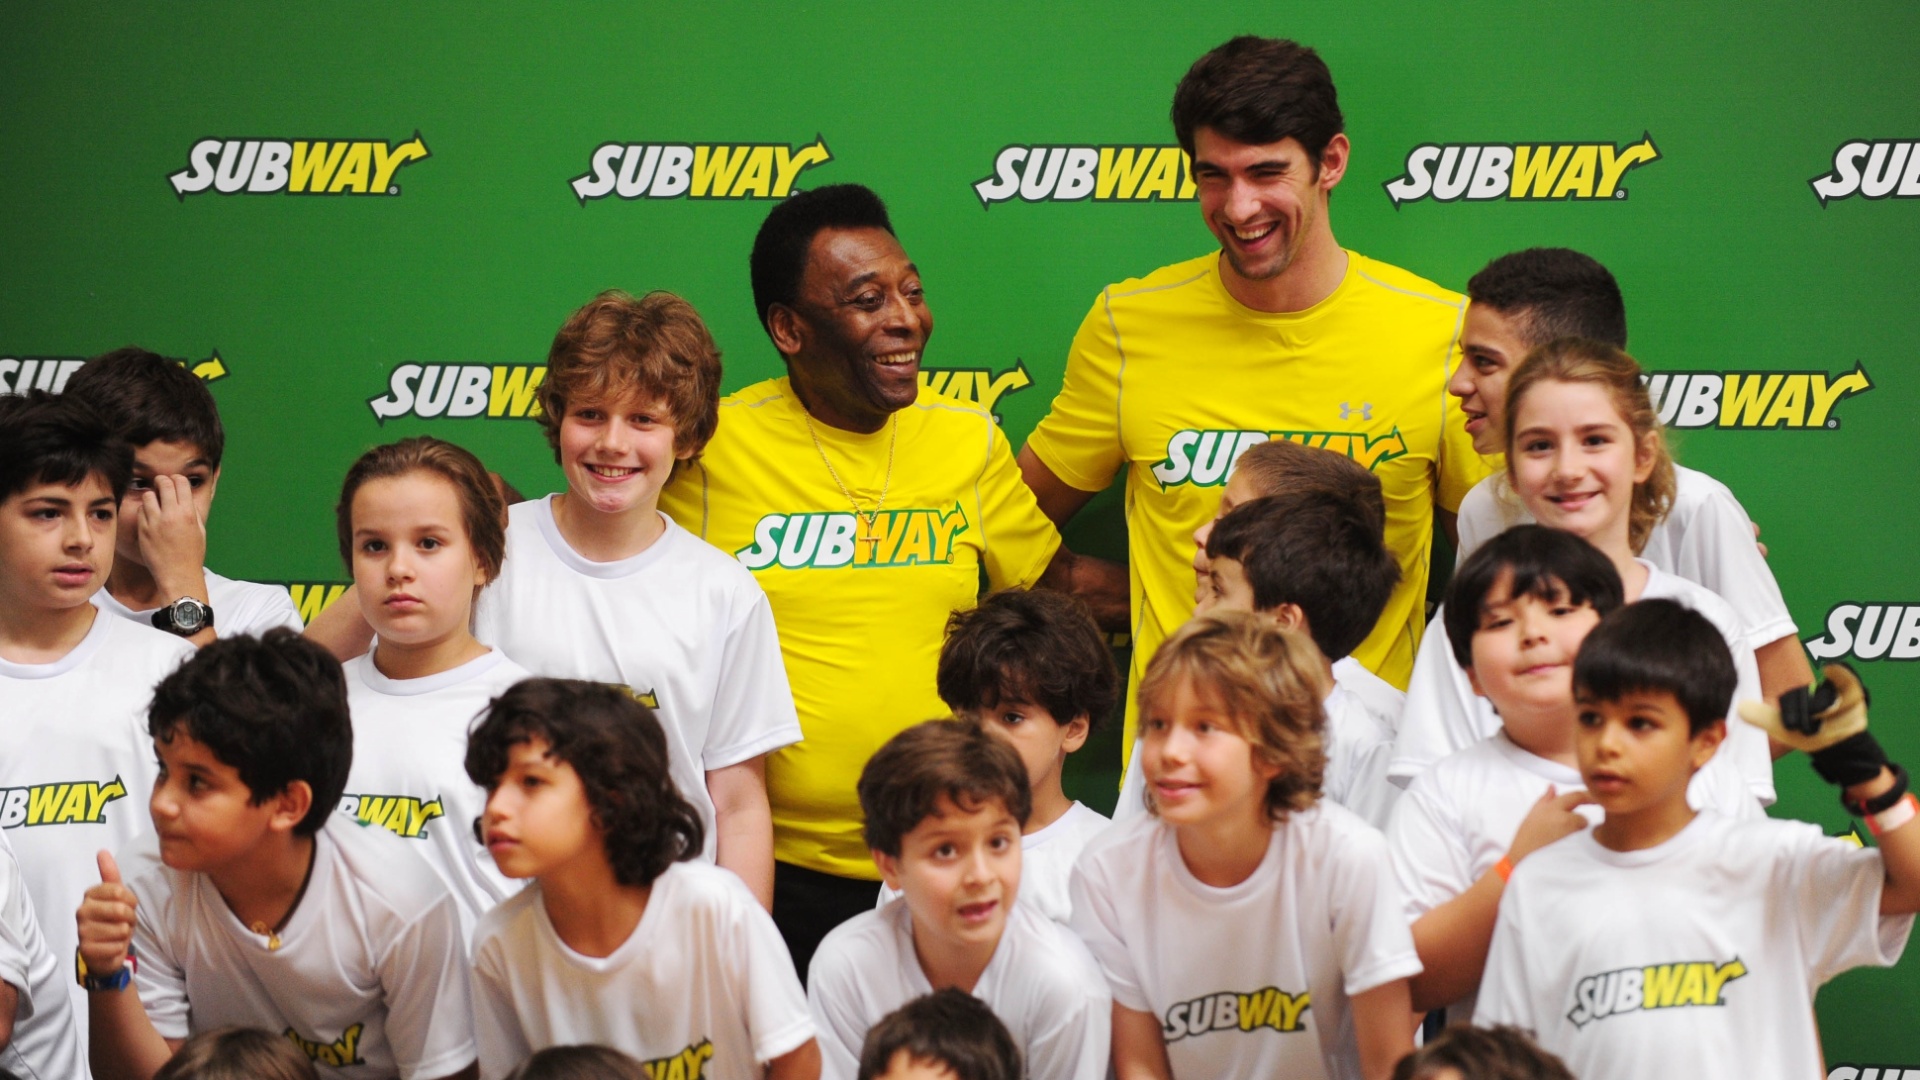 Evento em São Paulo contou com a presença de Pelé, do ex-nadador Michael Phelps e grupo de crianças